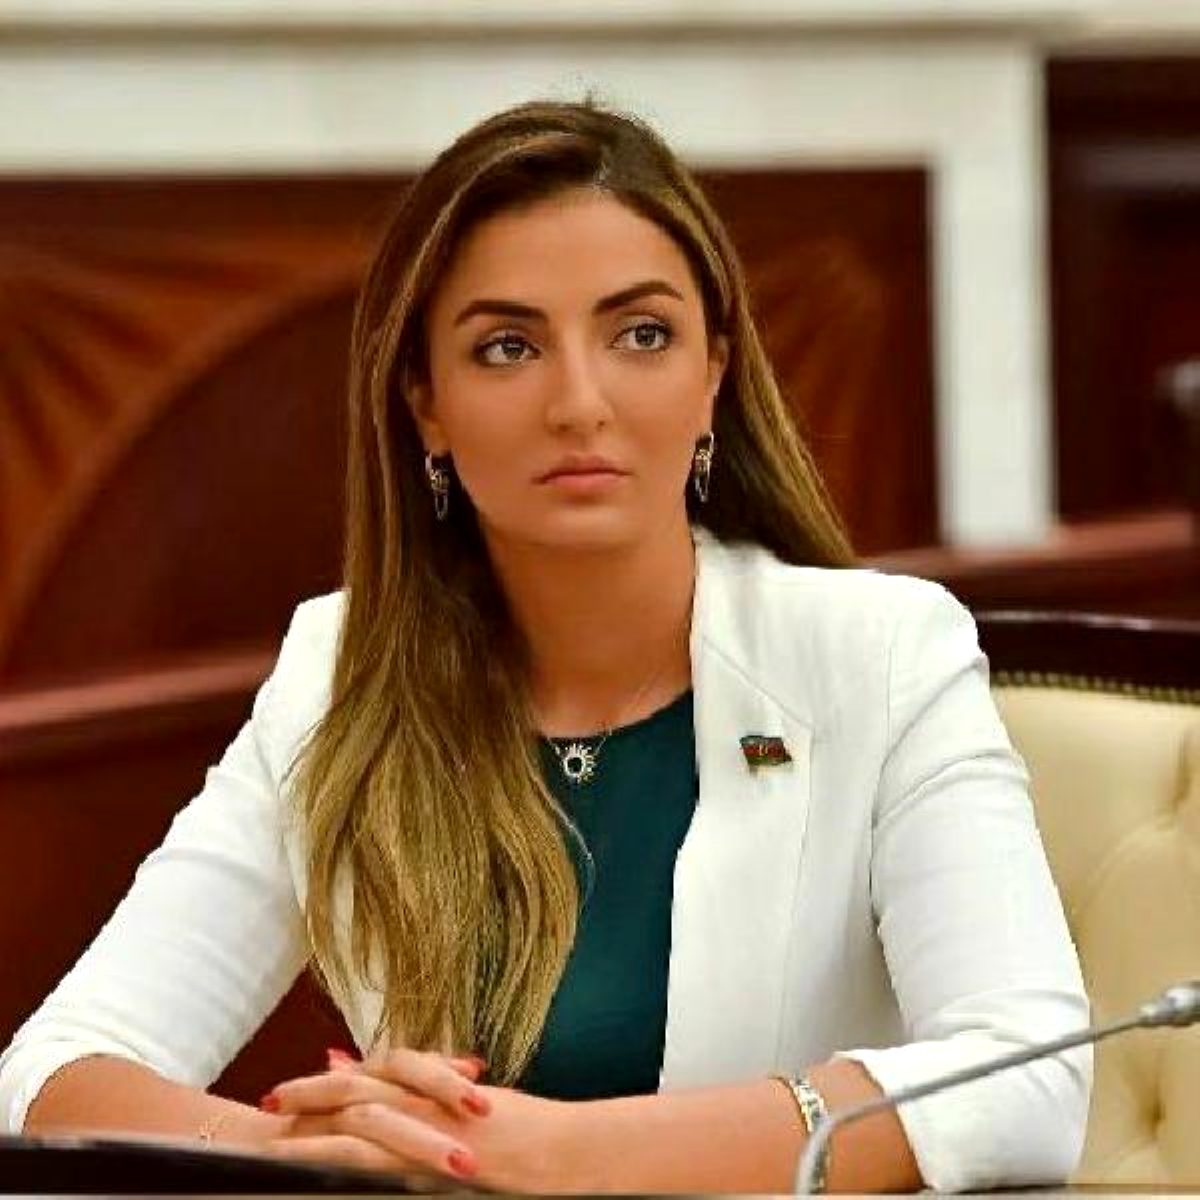 Azerbaycan milletvekili Nurullayeva: Haklı davamızda Türkiye her daim yanımızda oldu